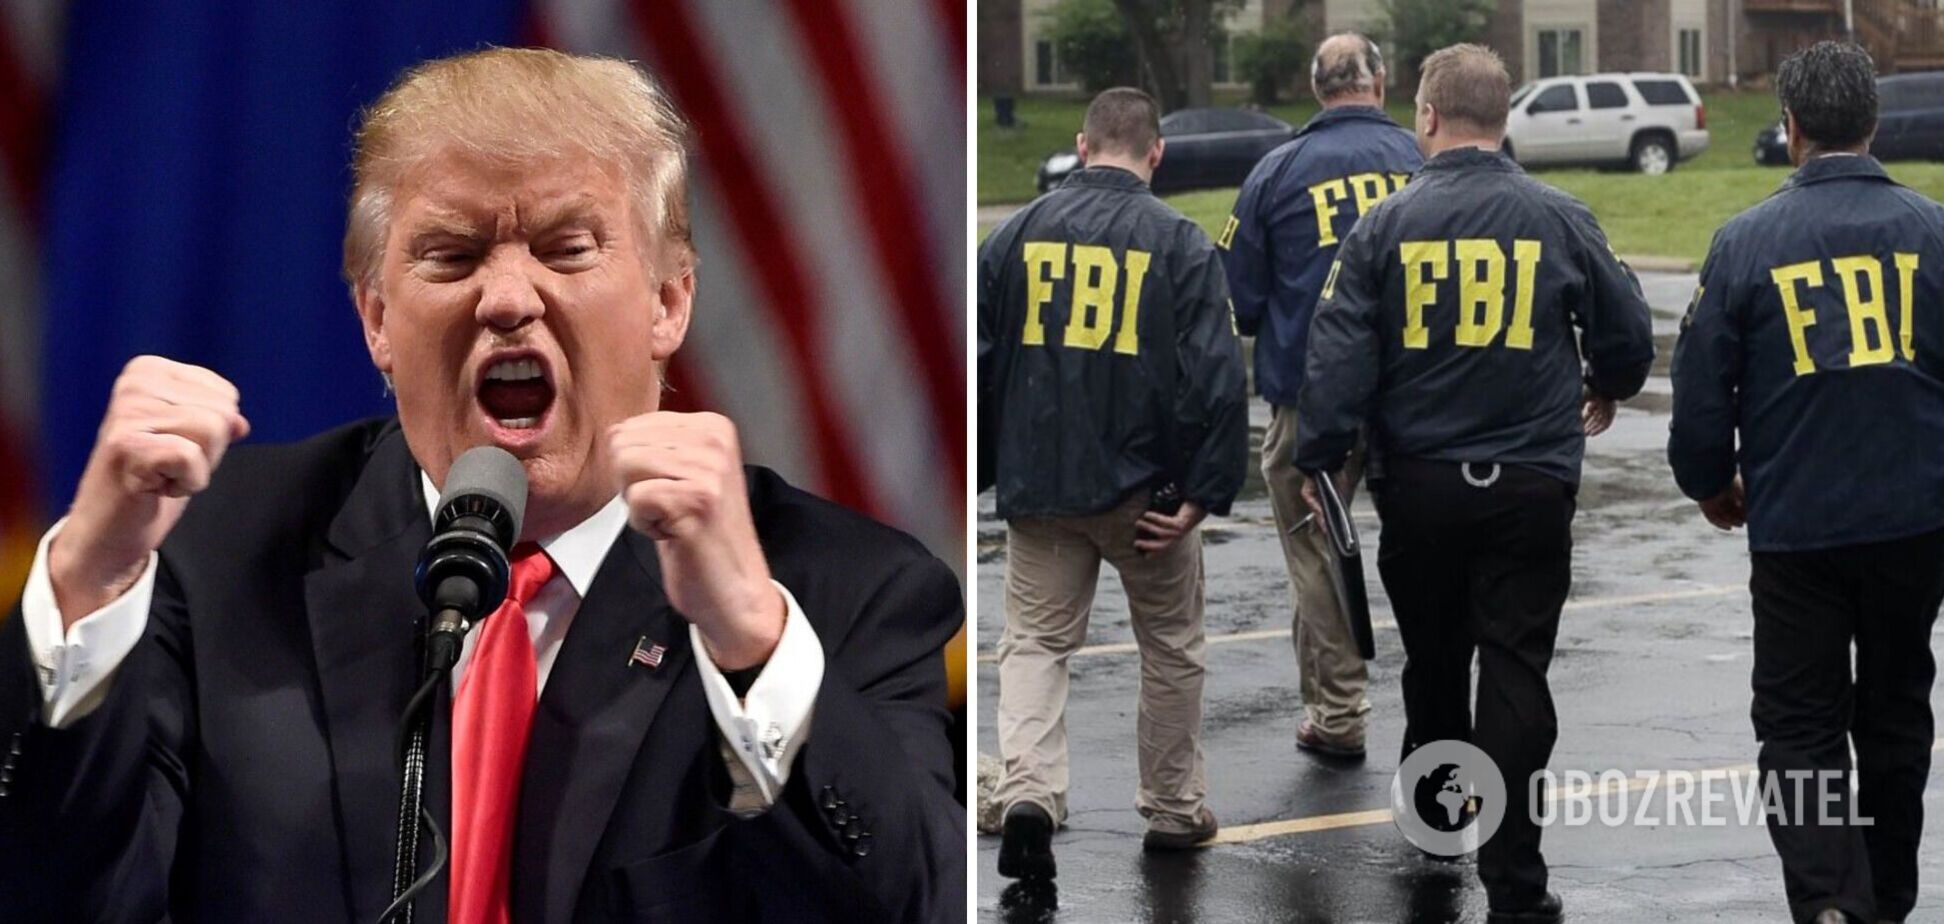 ФБР провело обыски в резиденции Трампа: он назвал действия силовиков 'нападением' и обвинил их во взломе сейфа